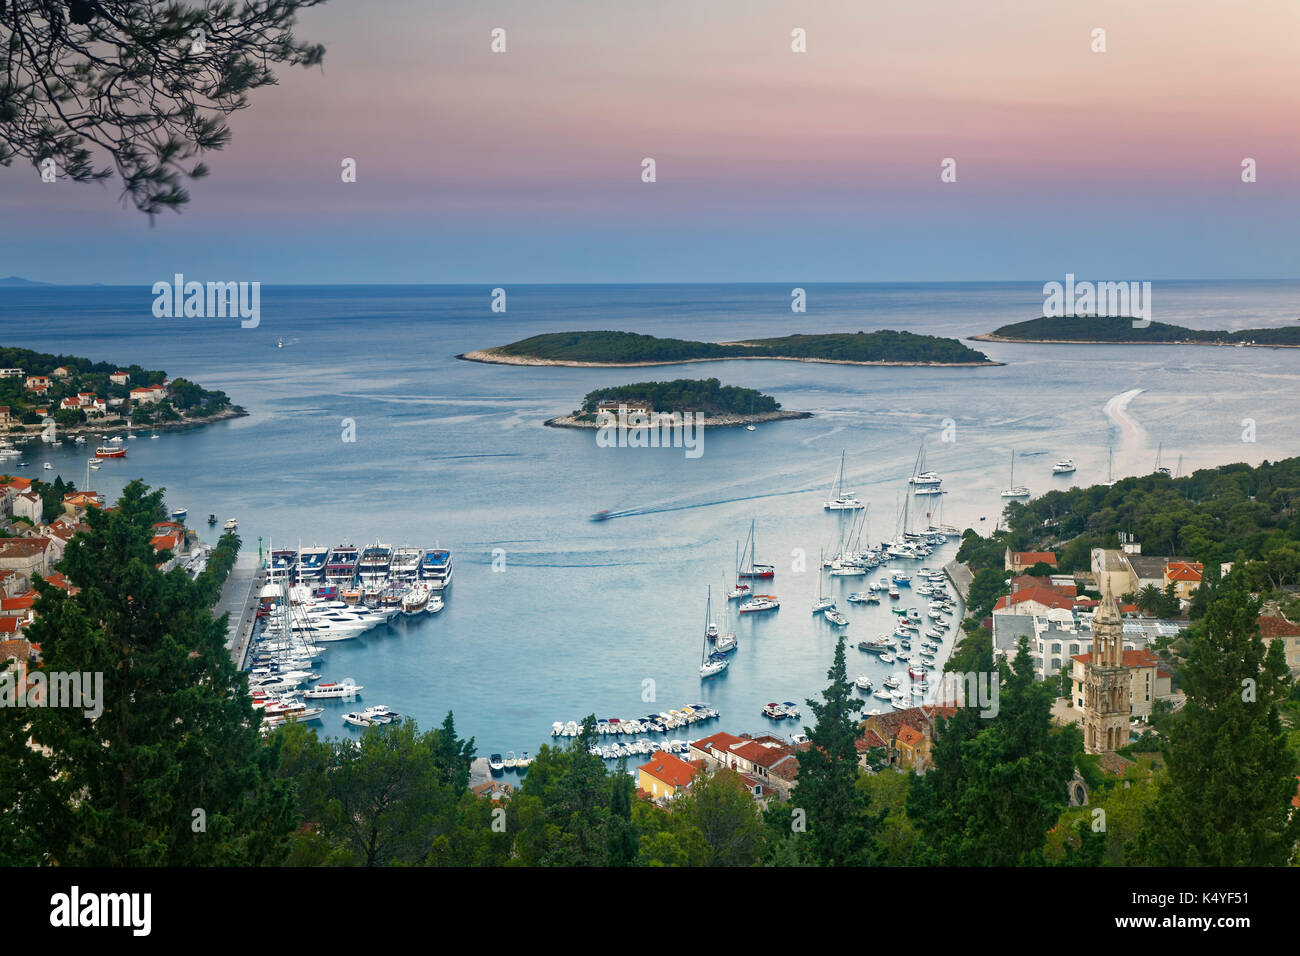 Vista del puerto y de la ciudad de Hvar, isla de Hvar, Split Dalmacia, Croacia Foto de stock